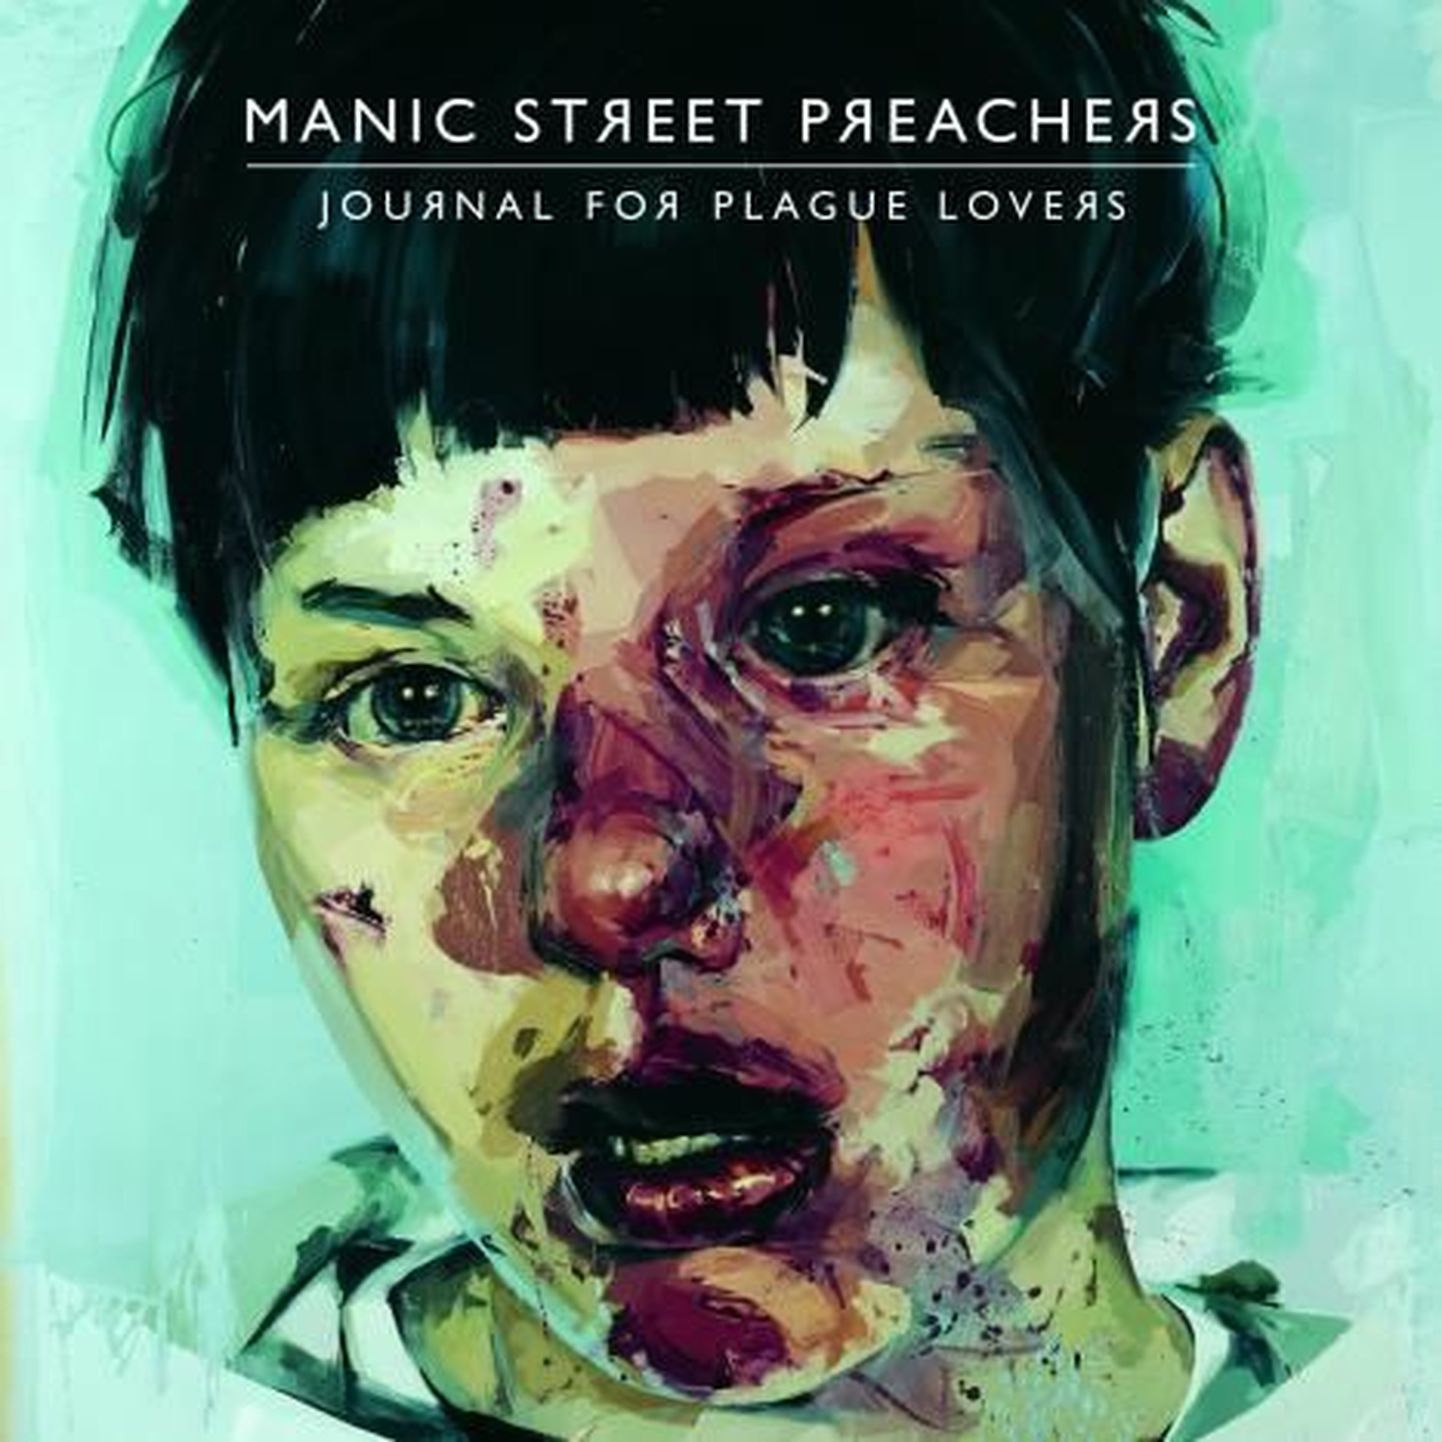 Manic Street Preachers “Journal For Plague Lovers”.